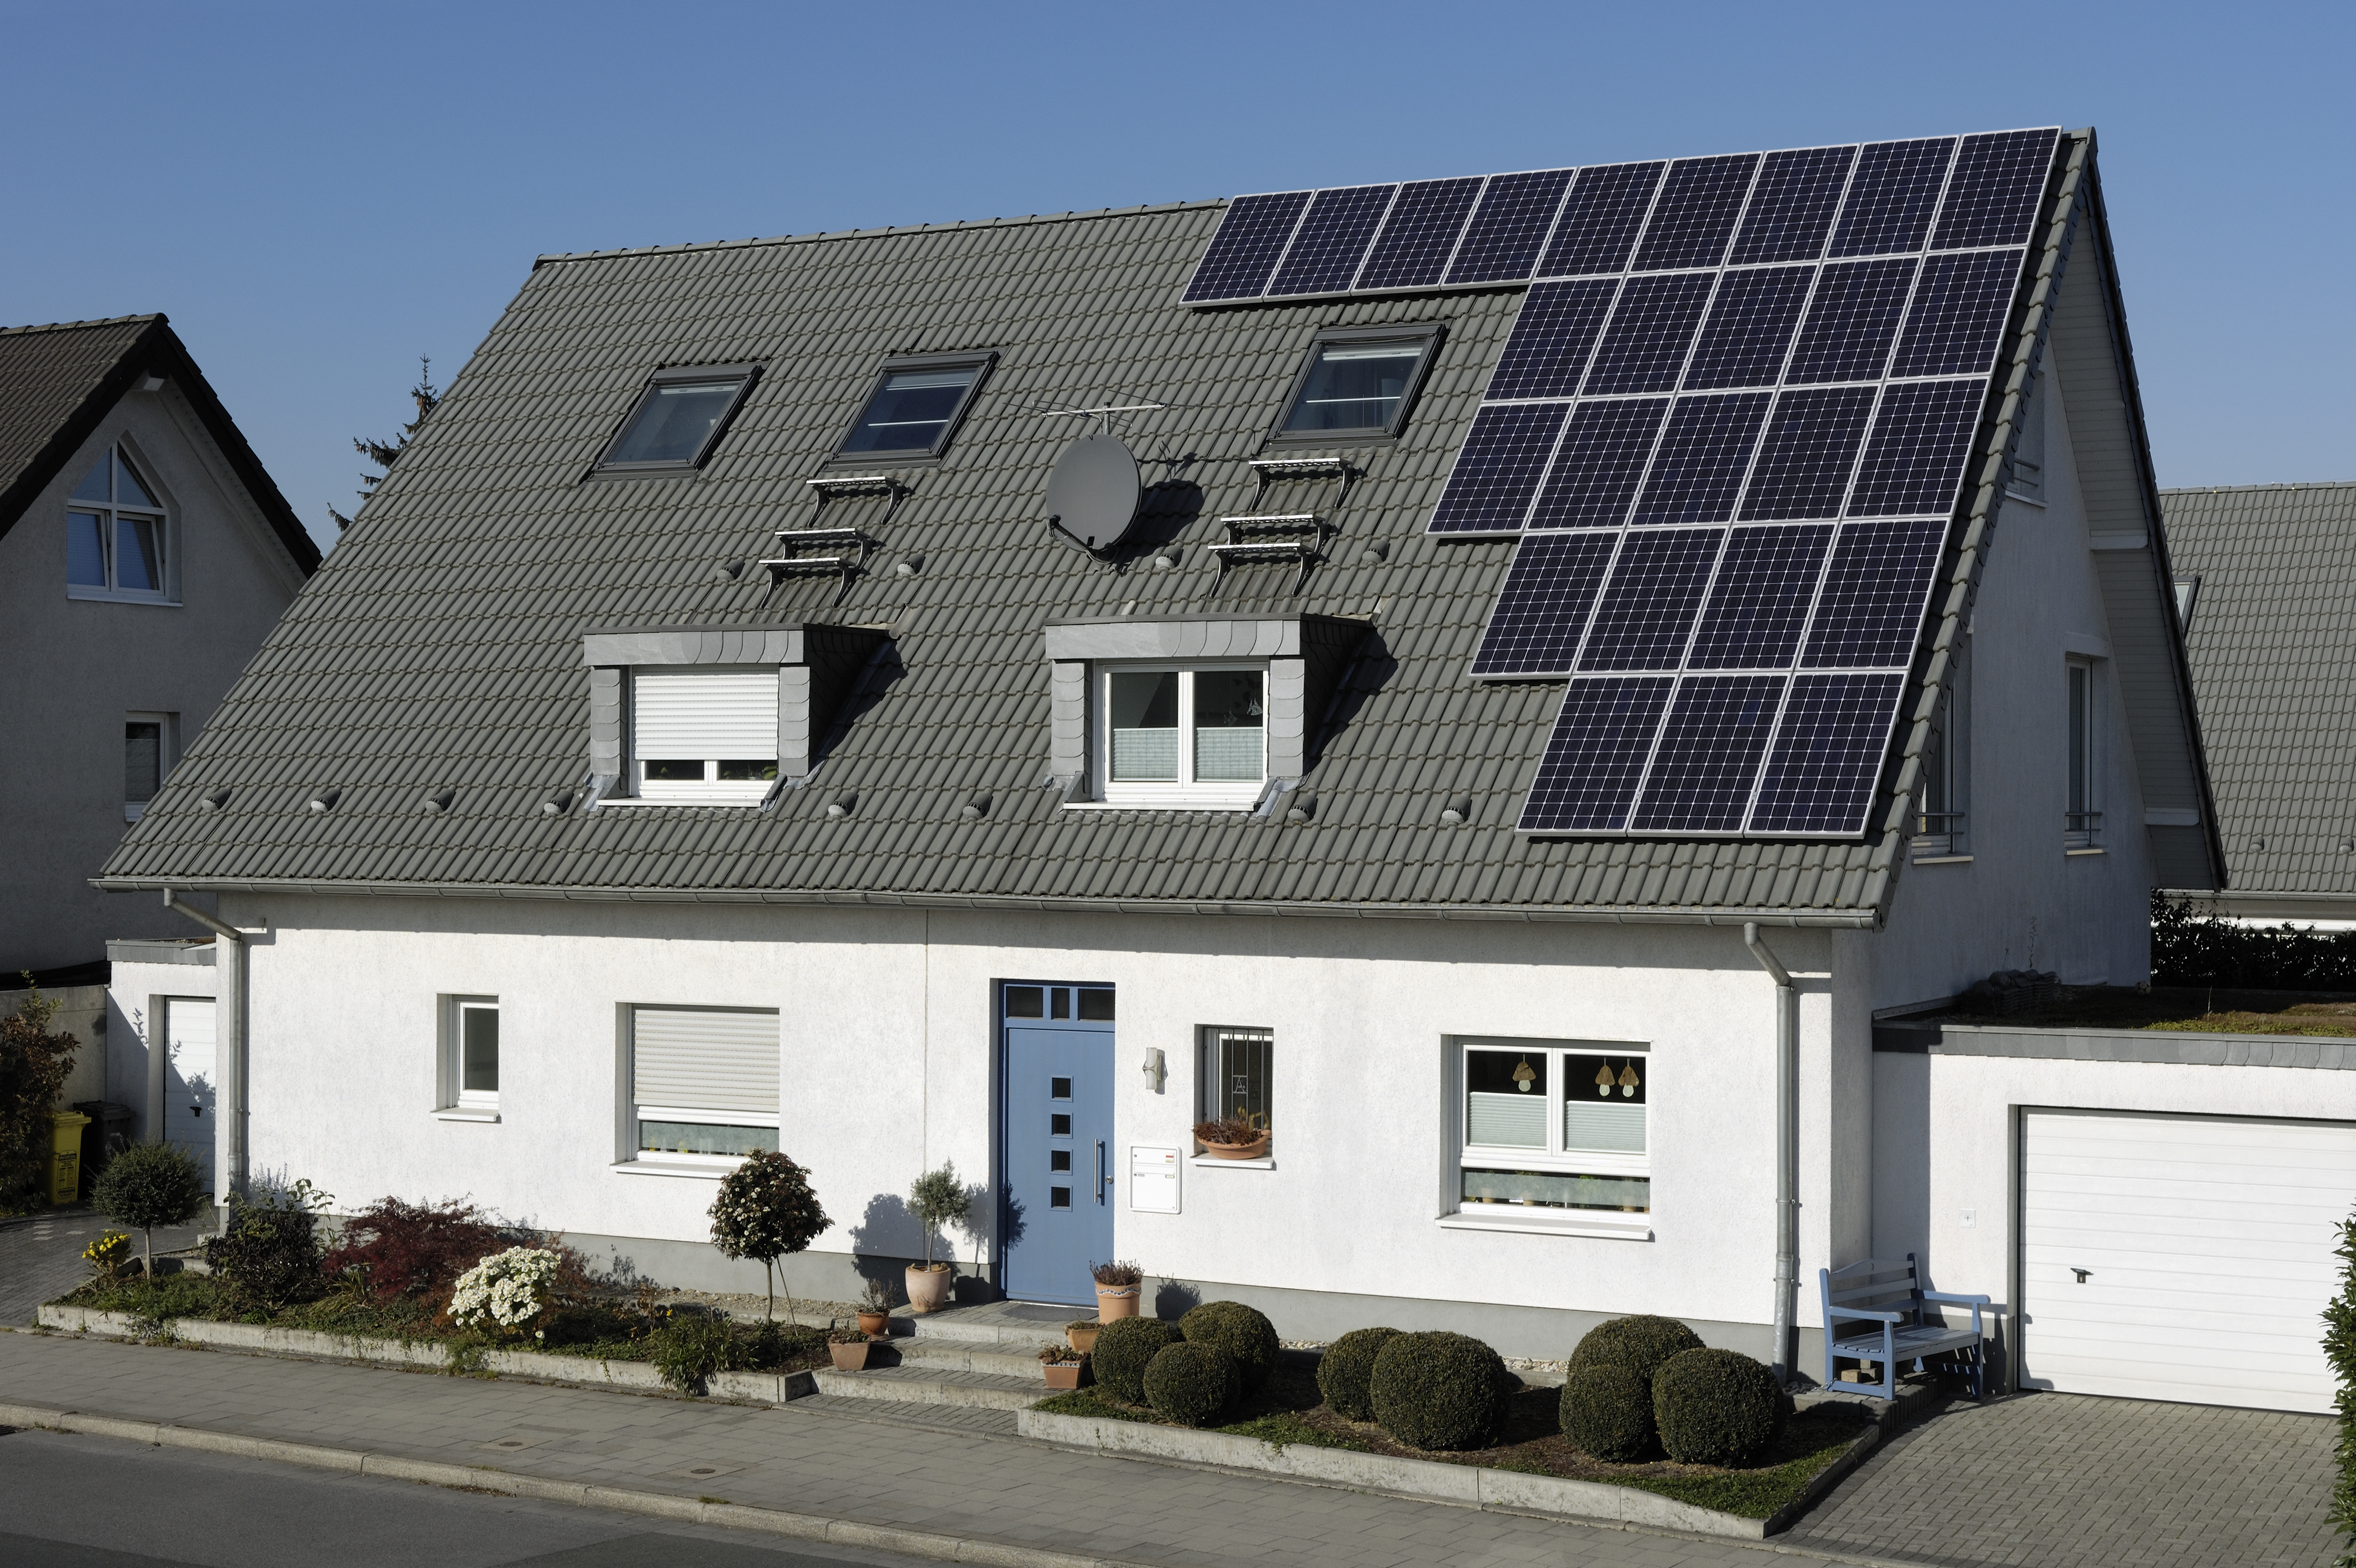 Einfamilienhaus mit Photovoltaikanlage auf dem Dach